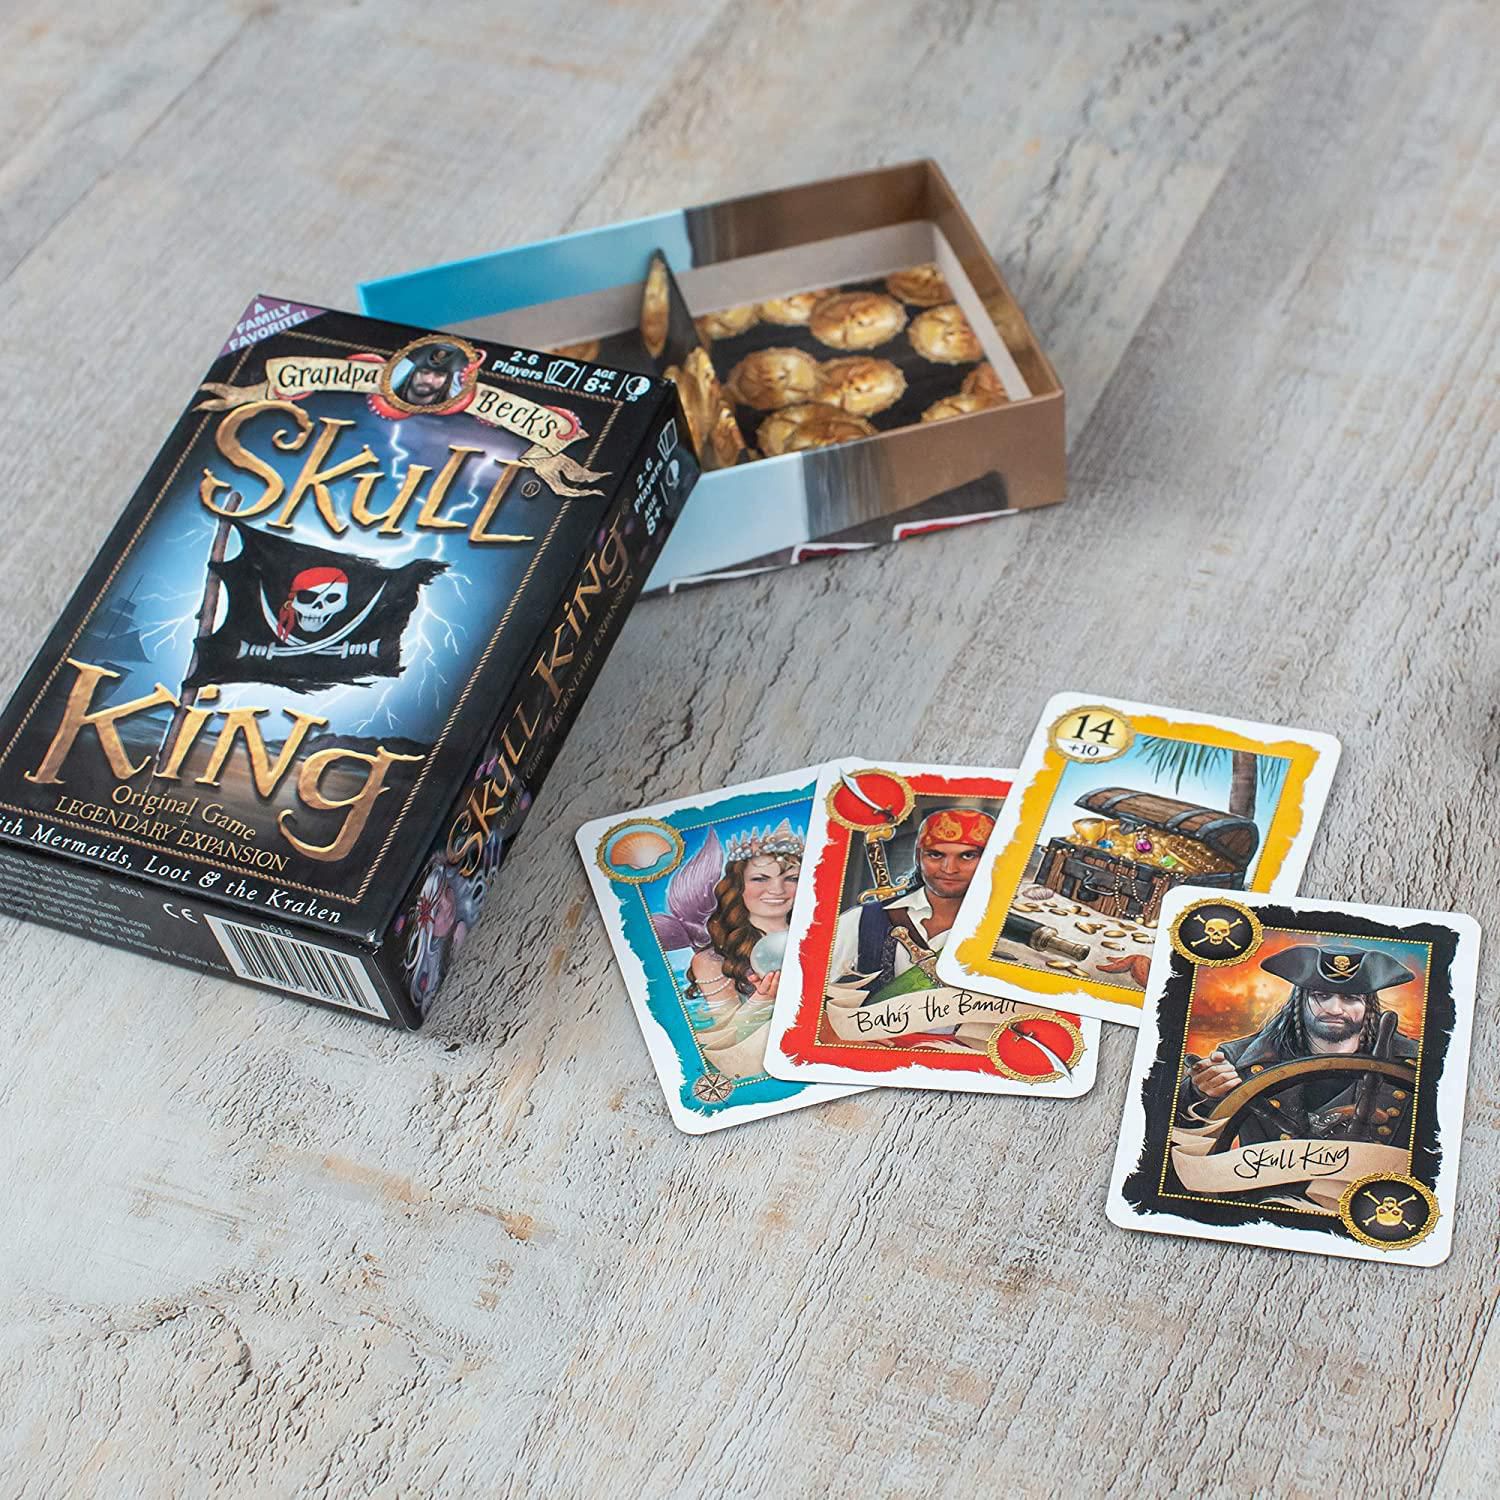 Skull King - Jeux de cartes %Jeux de société